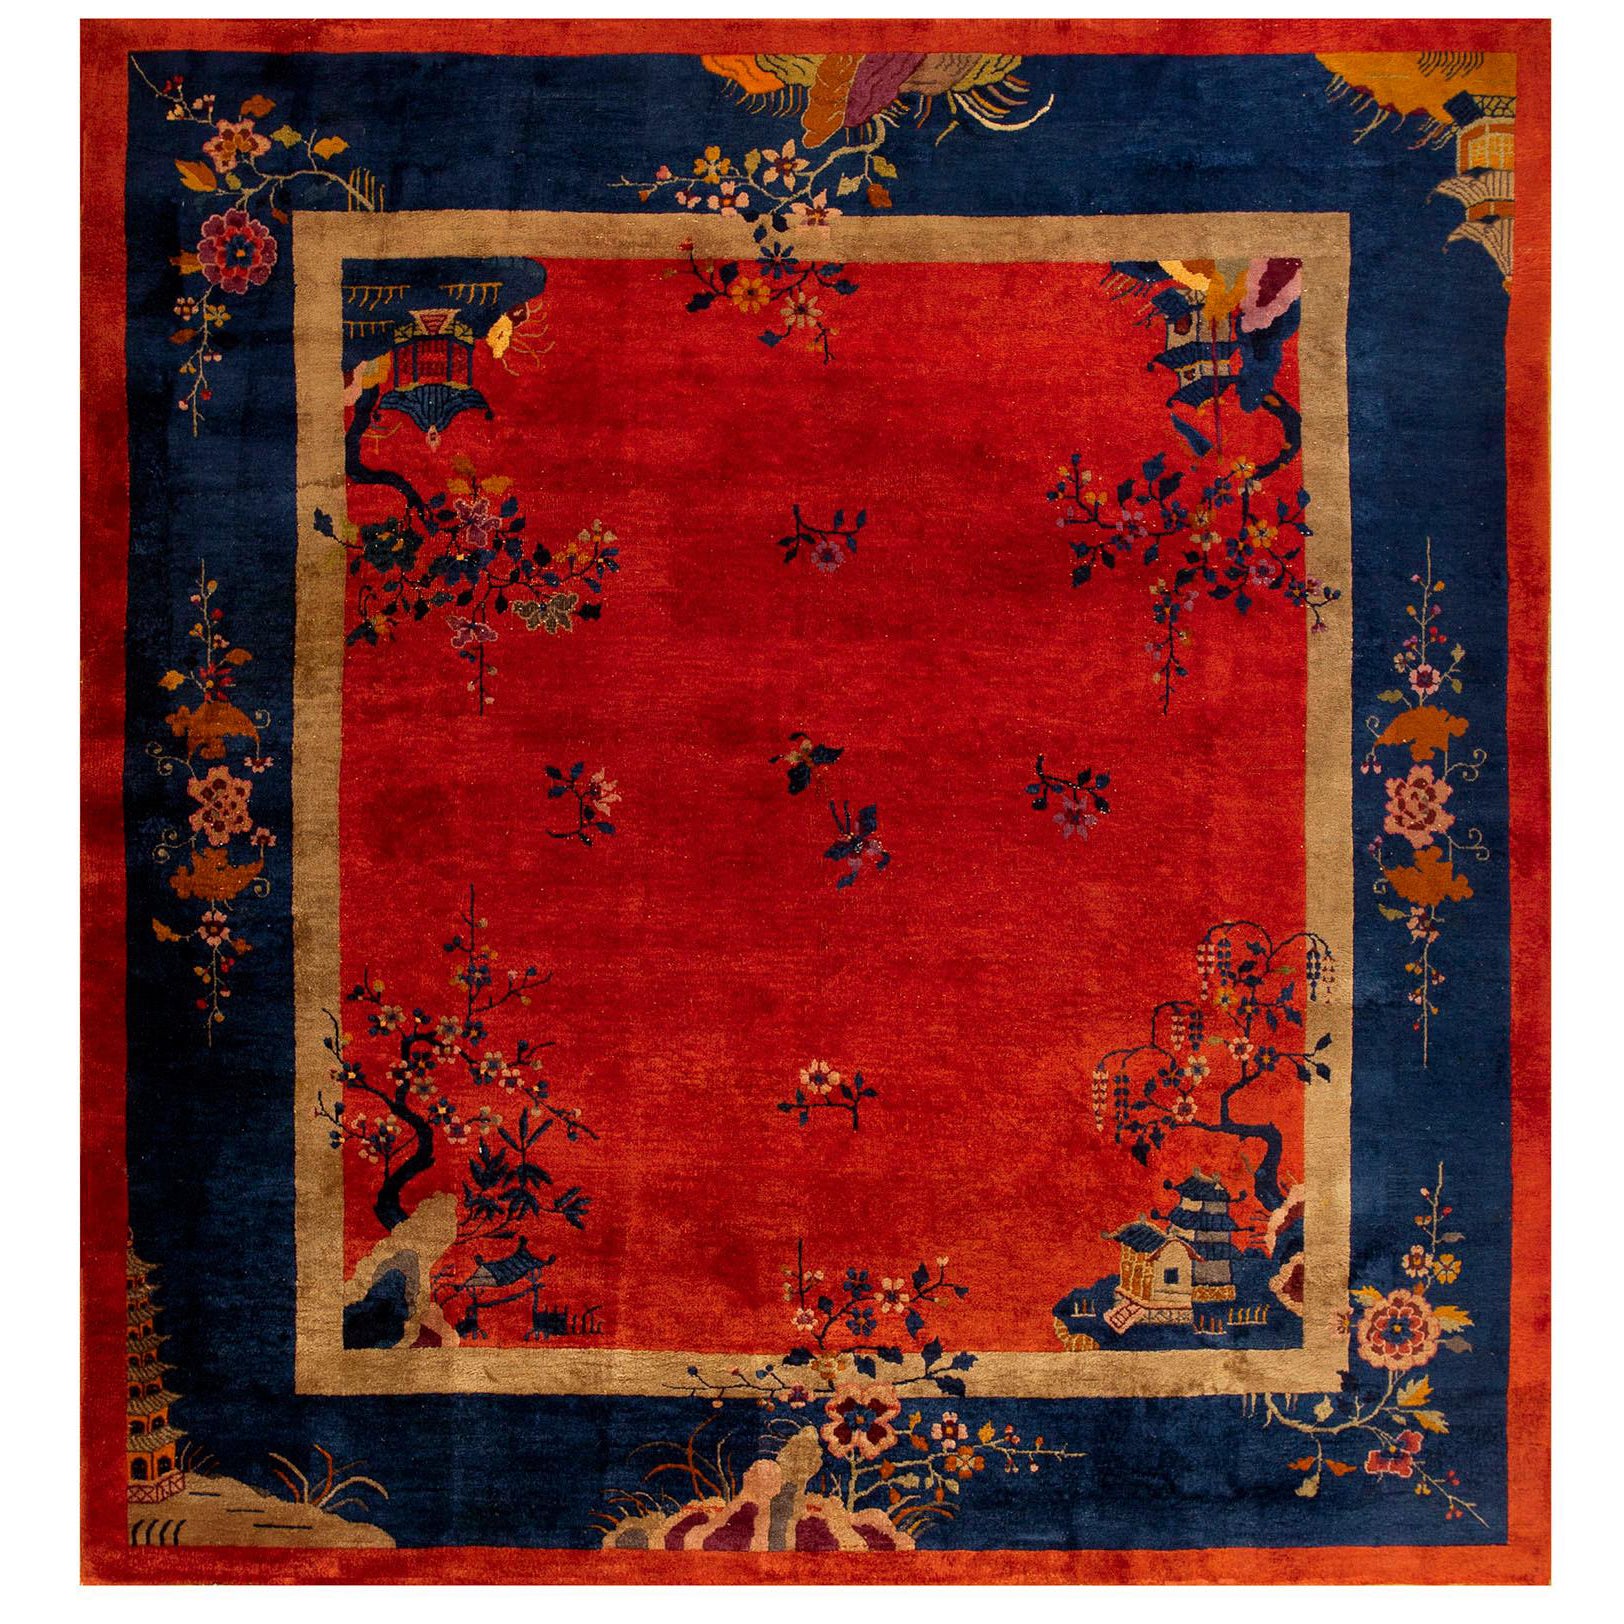 Chinesischer Art-Déco-Teppich aus den 1920er Jahren ( 9' x 9' 9'' – 275 x 297 cm)